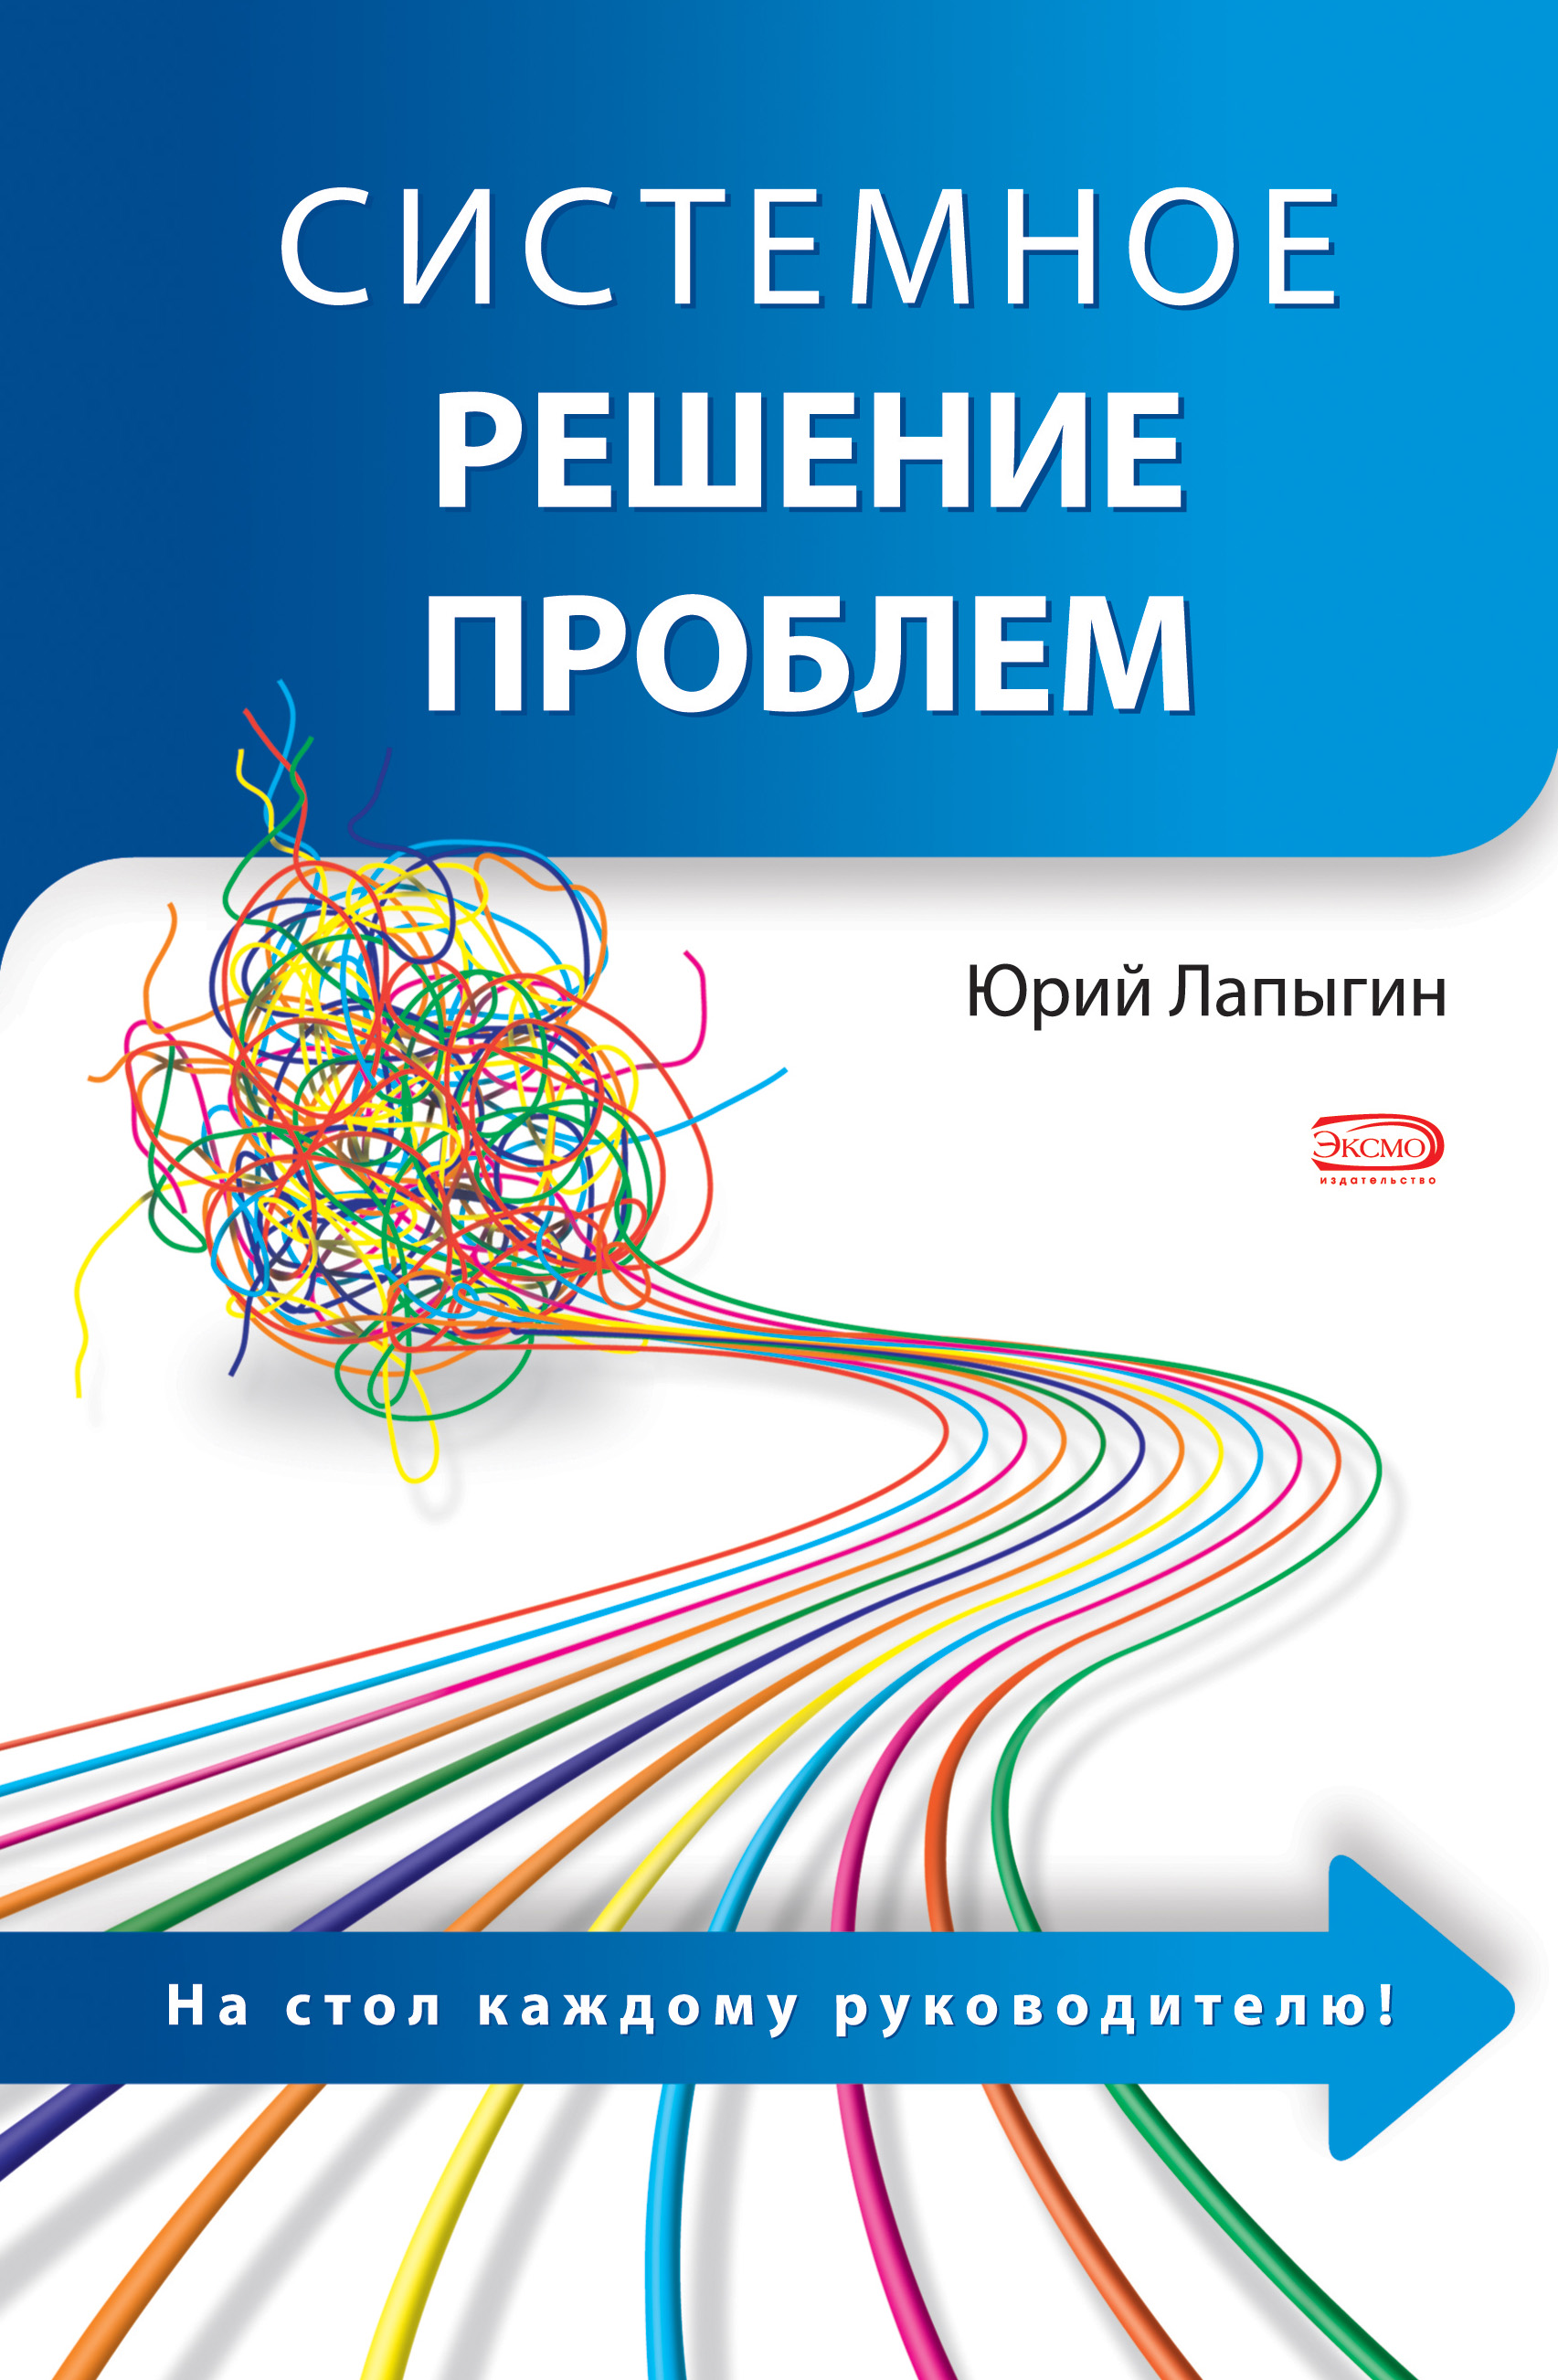 Книга Системное решение проблем из серии , созданная Юрий Лапыгин, может относится к жанру Управление, подбор персонала. Стоимость электронной книги Системное решение проблем с идентификатором 316652 составляет 199.00 руб.